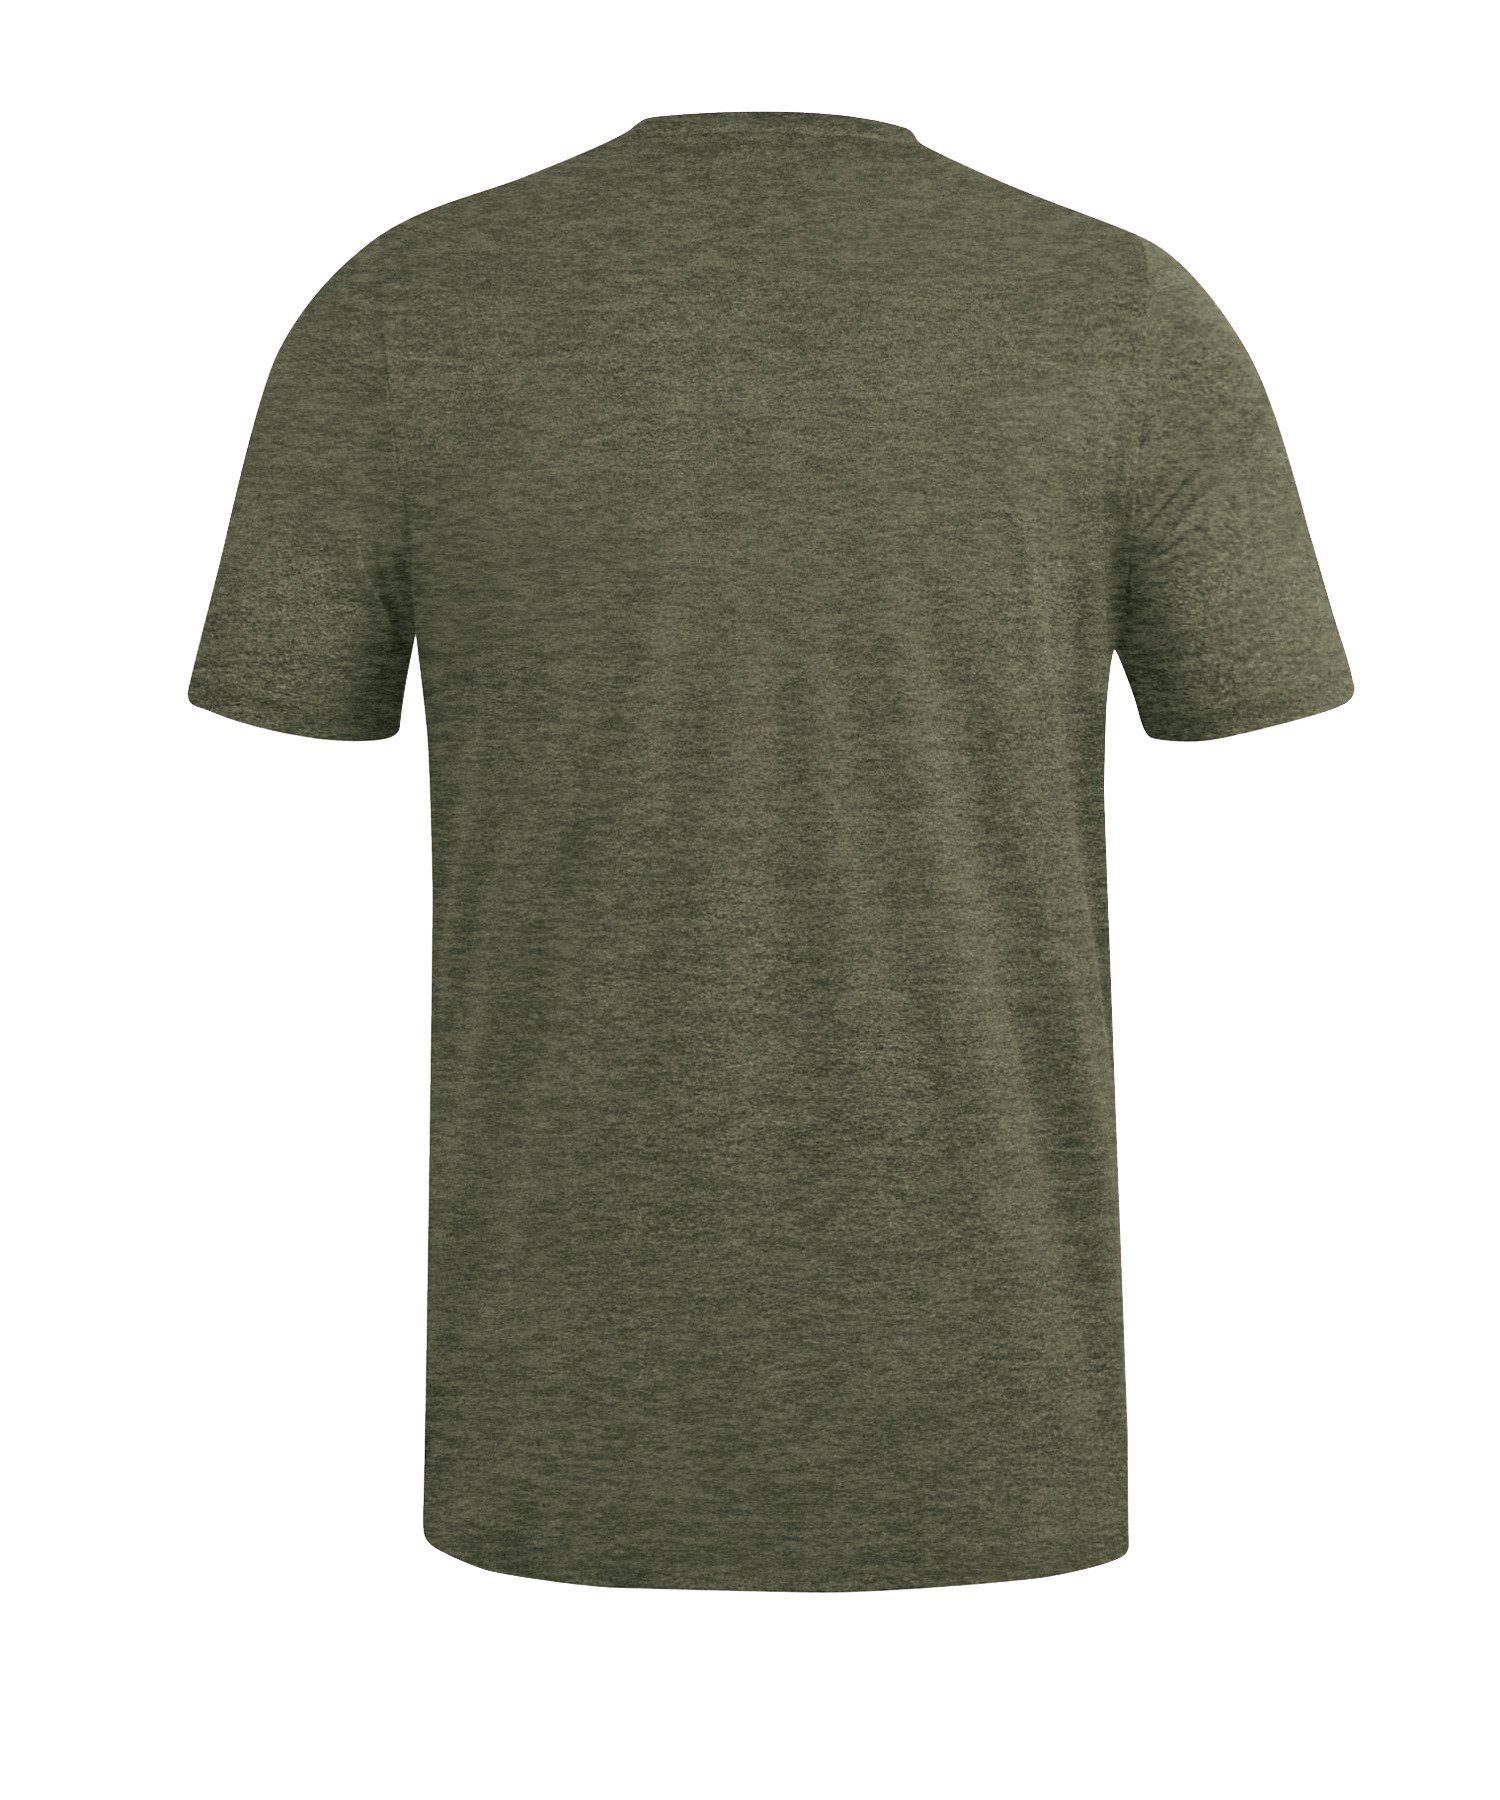 Jako T-Shirt T-Shirt khaki default Premium Basic